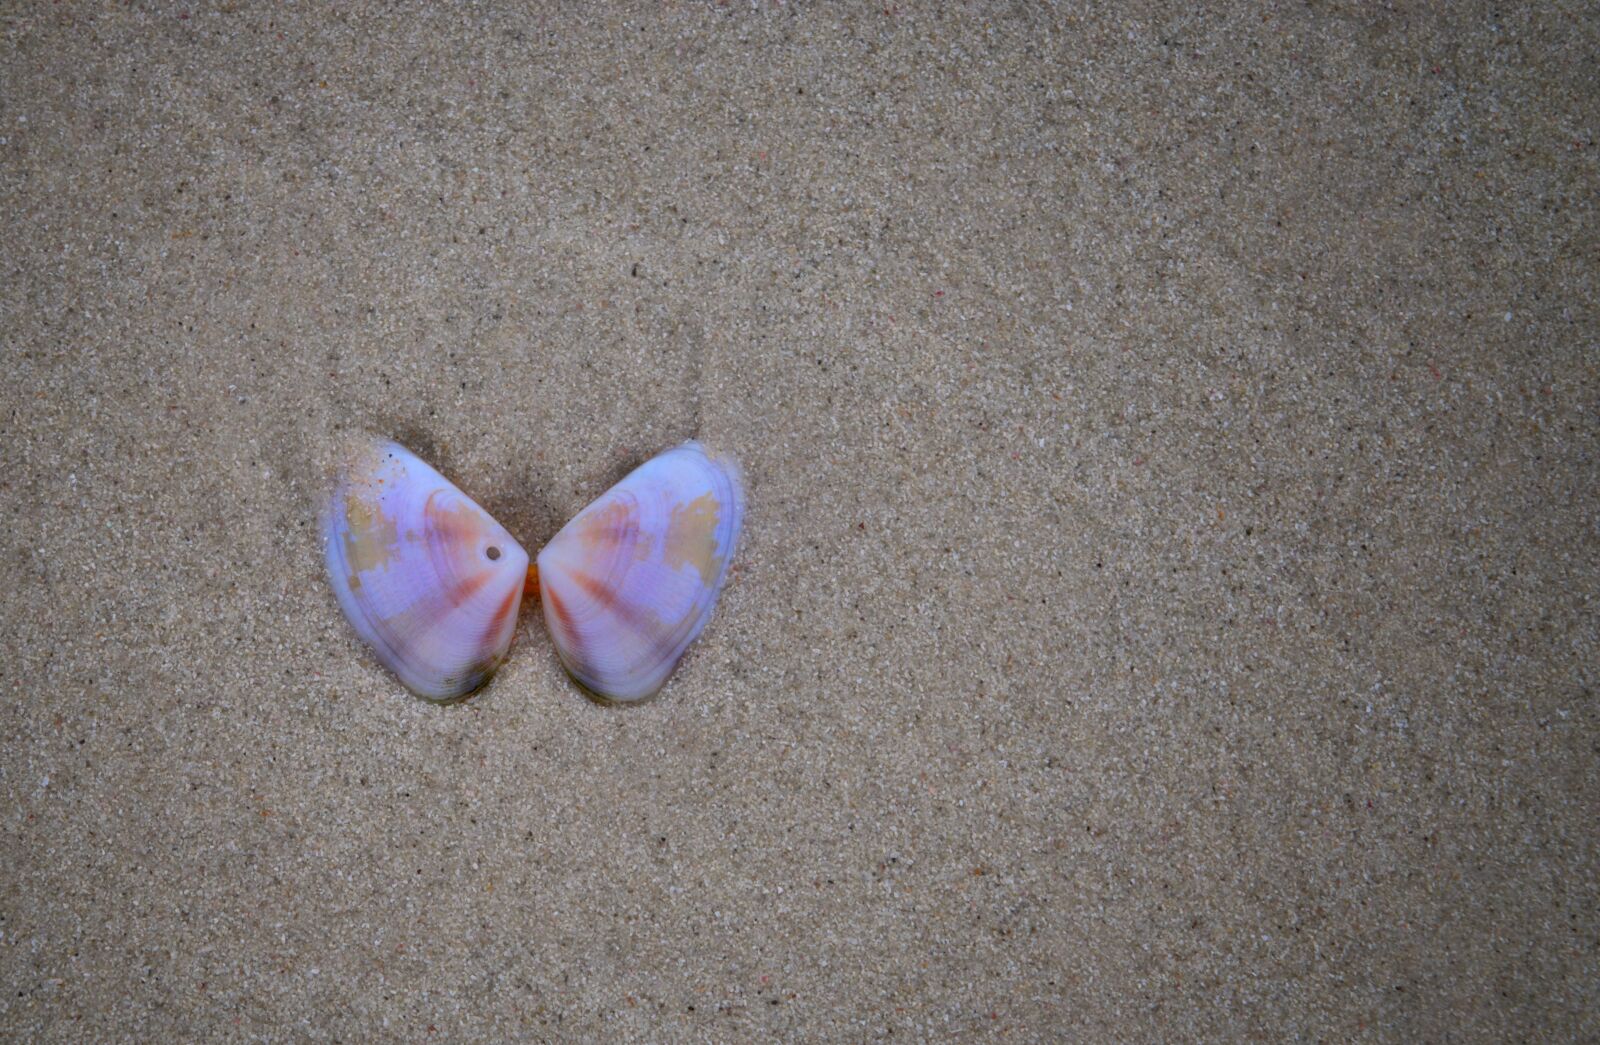 Nikon D3300 sample photo. Shell, sand, beach photography